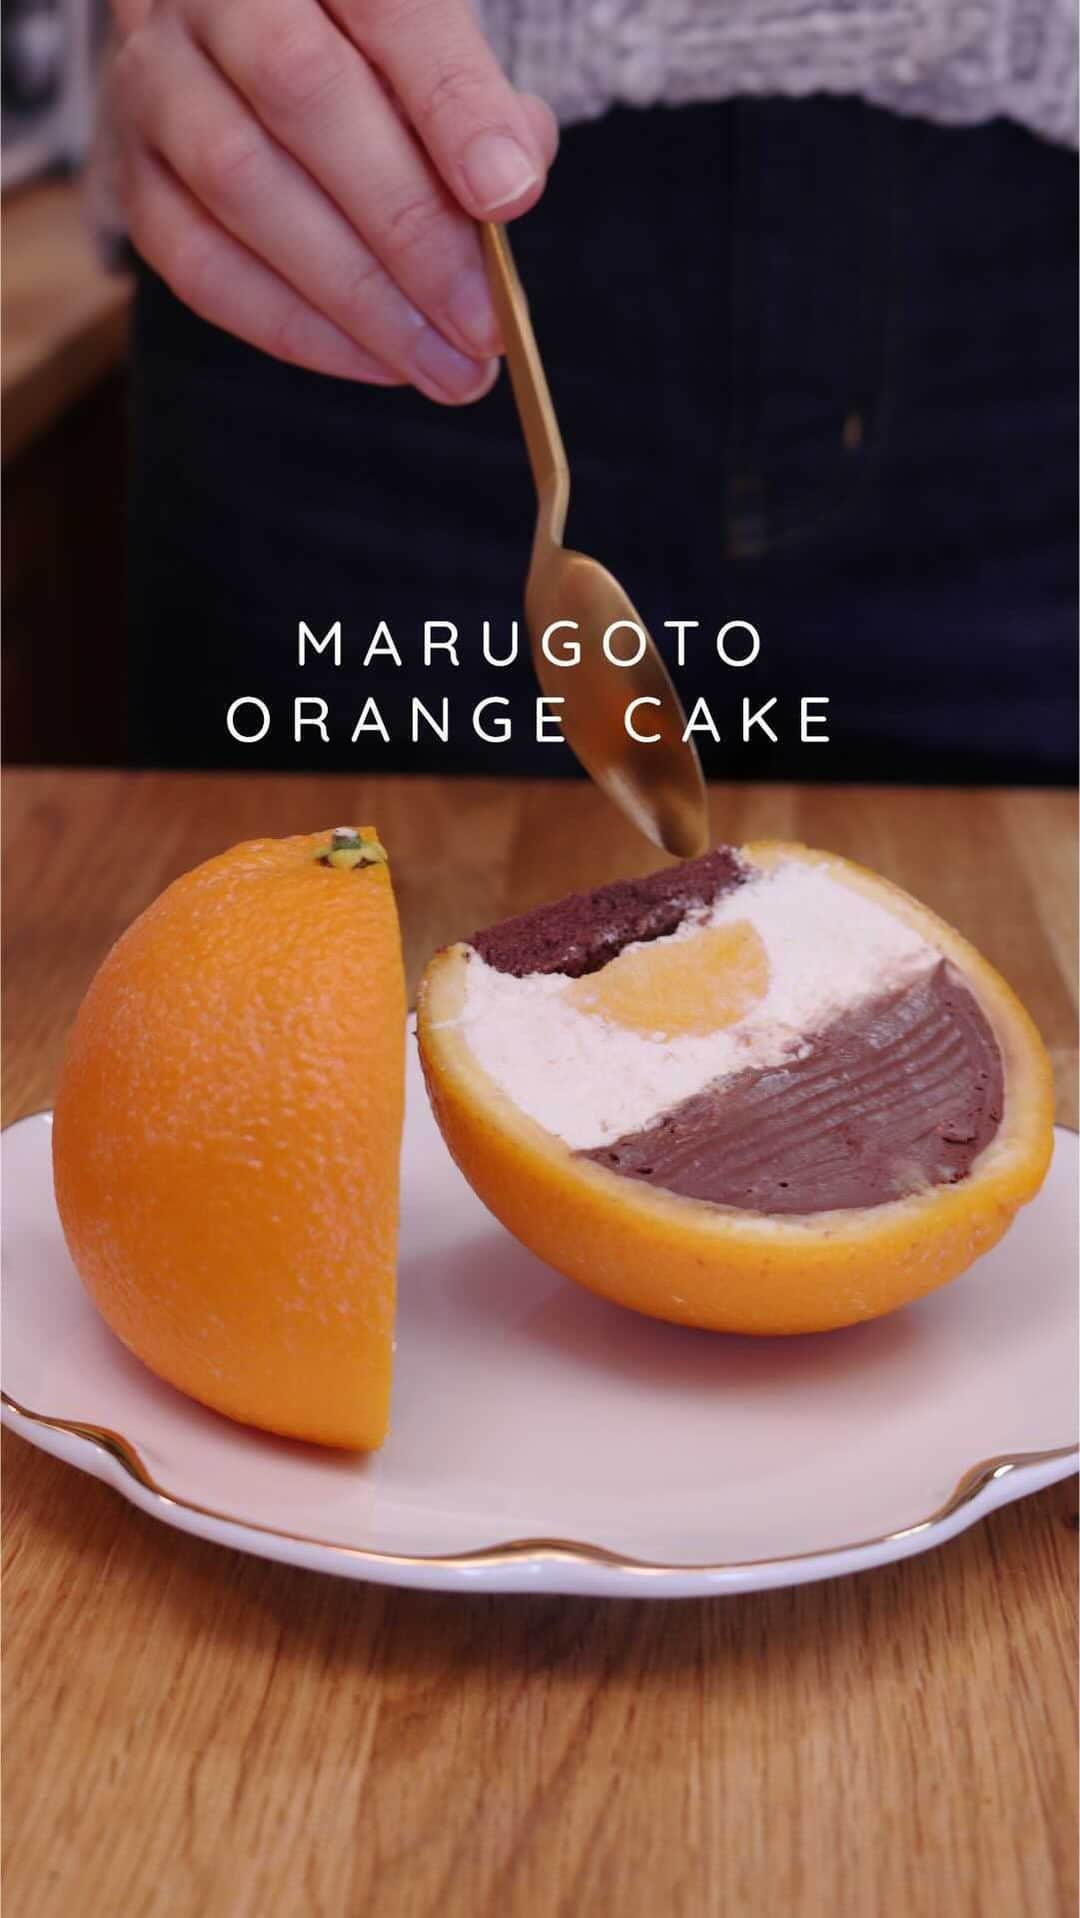 Cake.jpのインスタグラム：「「世界初のメロンケーキ職人」加藤シェフ監修のまるごとフルーツケーキシリーズからオレンジケーキが登場です♪ オレンジ丸ごと一個をショコラオランジュに。 ひとつひとつ丁寧にくり抜いたオレンジの中に ビターチョコムース、フロマージュムース、オレンジジュレ、チョコレートスポンジが詰まってます！ お一人様でも食べやすいお手頃サイズです♪  --------------------------------------------- まるごとフルーツケーキシリーズとは  パカッ！と割って、 あーっ！と驚いて、 みんなで眺めて、香って、食べて。 スイーツを囲む瞬間を、 まるごと味わおう！  「五感に響く、体験を」をコンセプトに作り出された Cake.jpオリジナルケーキです♪ ---------------------------------------------  今回ご紹介のスイーツはこちら  https://cake.jp/item/3388711/  まるごとフルーツケーキシリーズ https://cake.jp/originals/marugoto_cake/  IGTVパーソナリティ   @asyakodayo  感動が集まる場所をもっとハッピーに！  https://cake.jp/  ＊＊＊＊＊＊＊＊＊＊＊＊＊＊＊＊＊ #cakejp #スイーツ好きな人と繋がりたい#ケーキスタグラム  #スイーツ#スイーツ好き#食べるの好きな人と繋がりたい#スイーツ部#お菓子#おやつ#おうちカフェ#デザート#映えスイーツ#おうちスイーツ#オレンジ#まるごとオレンジ#フルーツ#フルーツケーキ#インスタ映え」